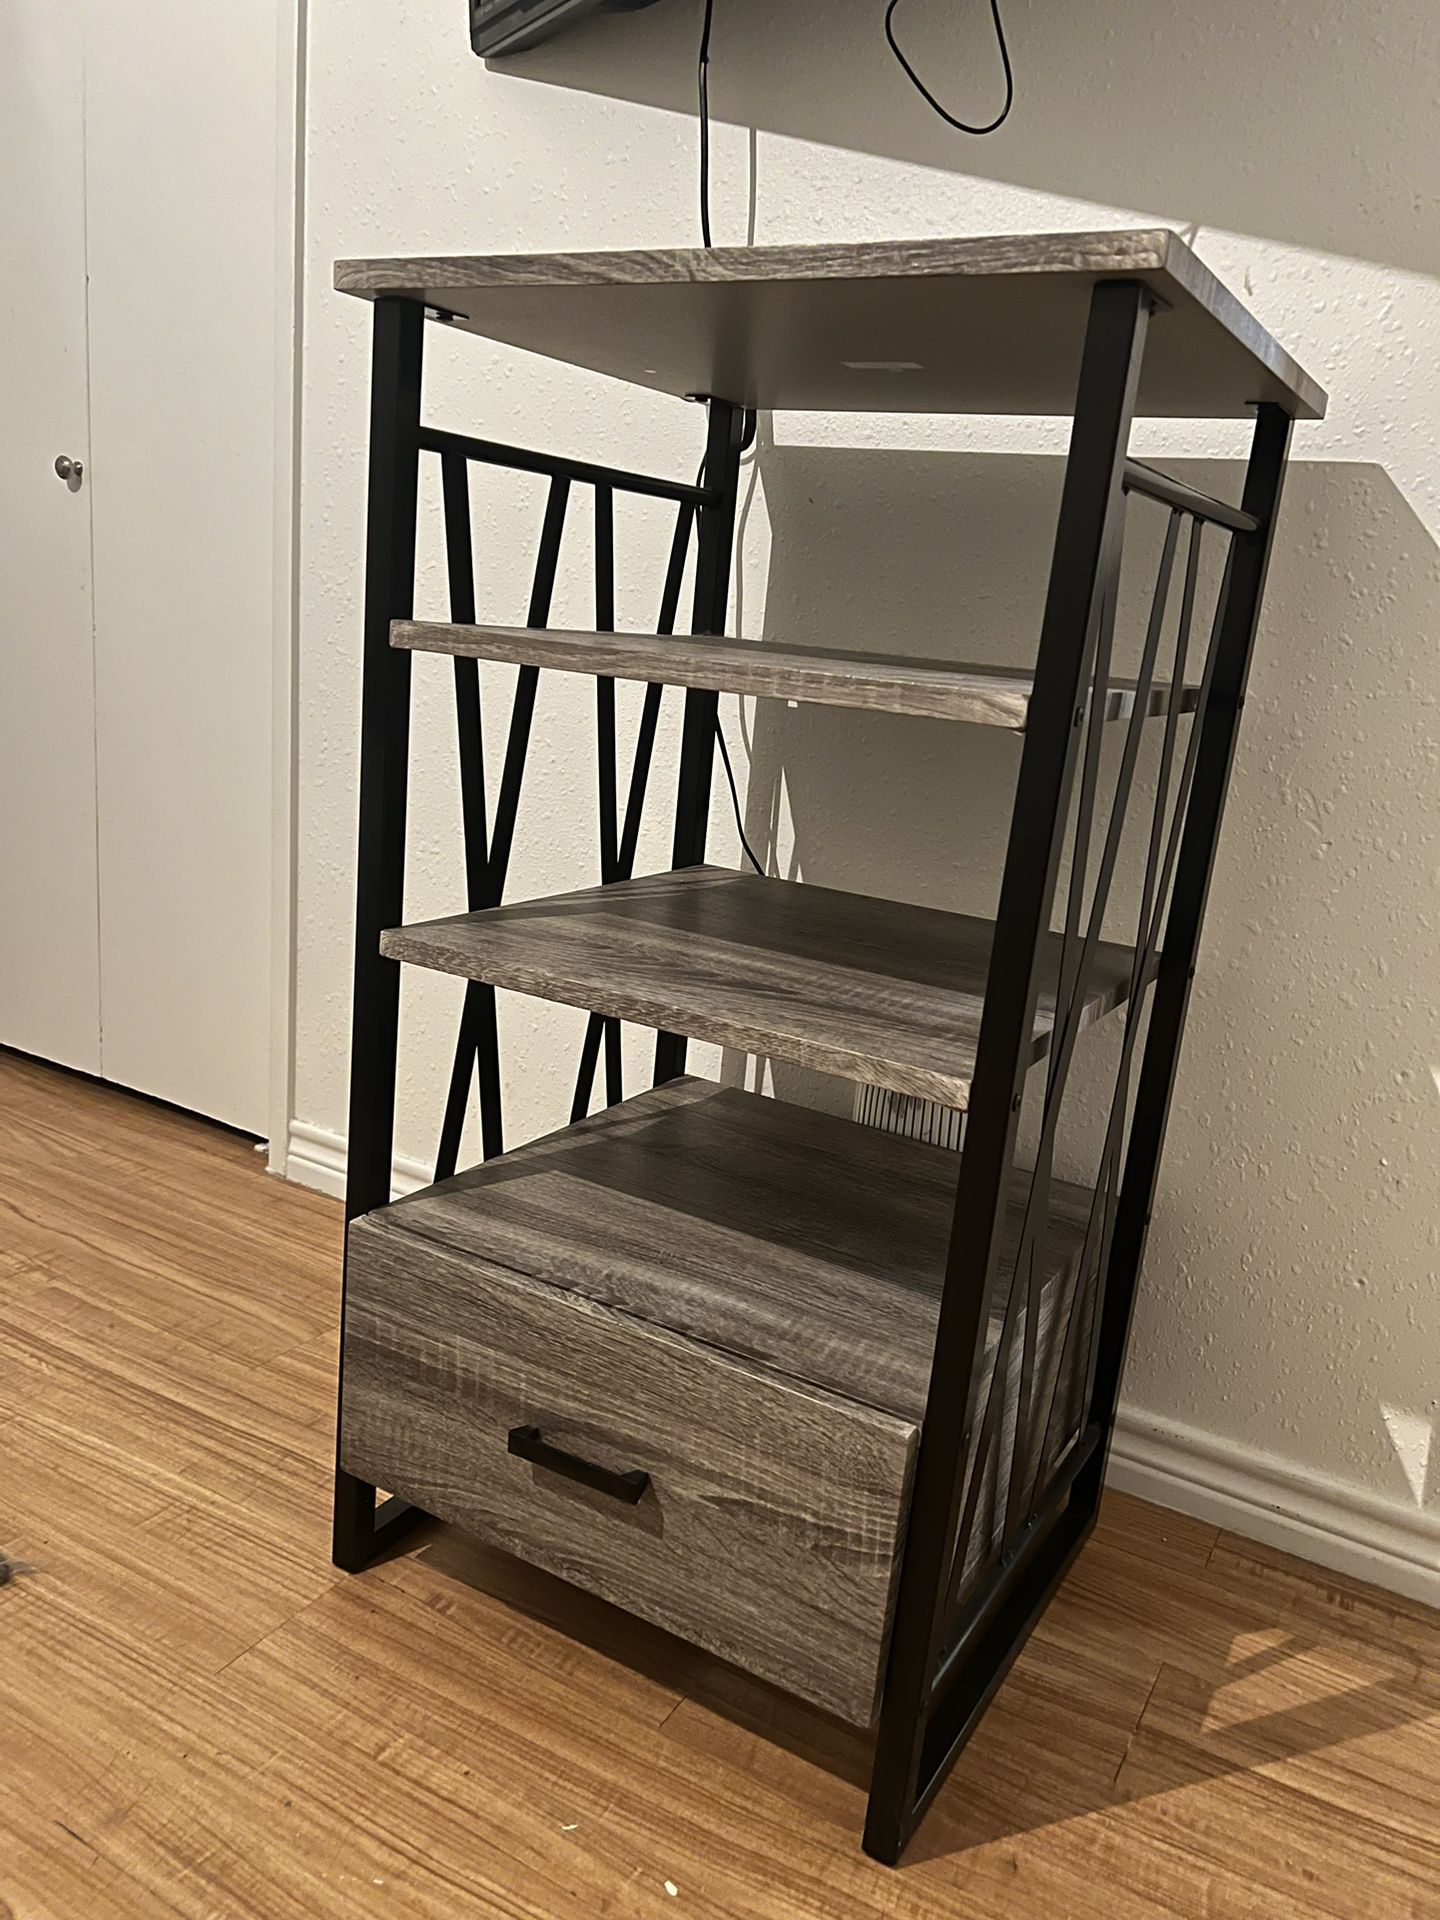 Bookshelf/Storage